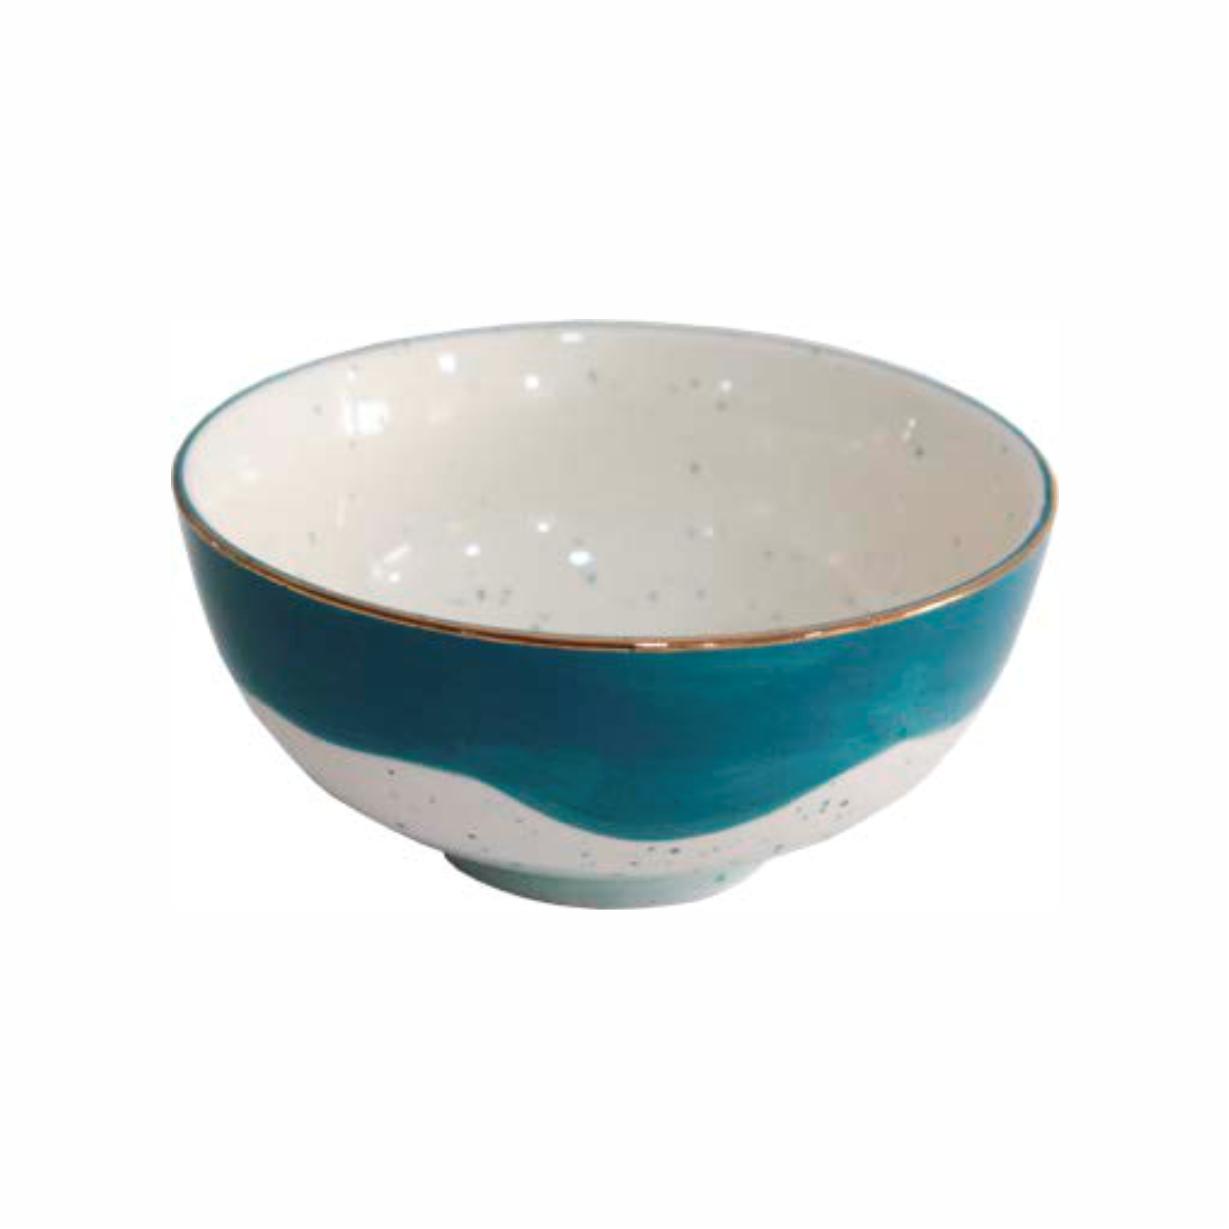 Bowl de Porcelana Blue - 4 Unidades